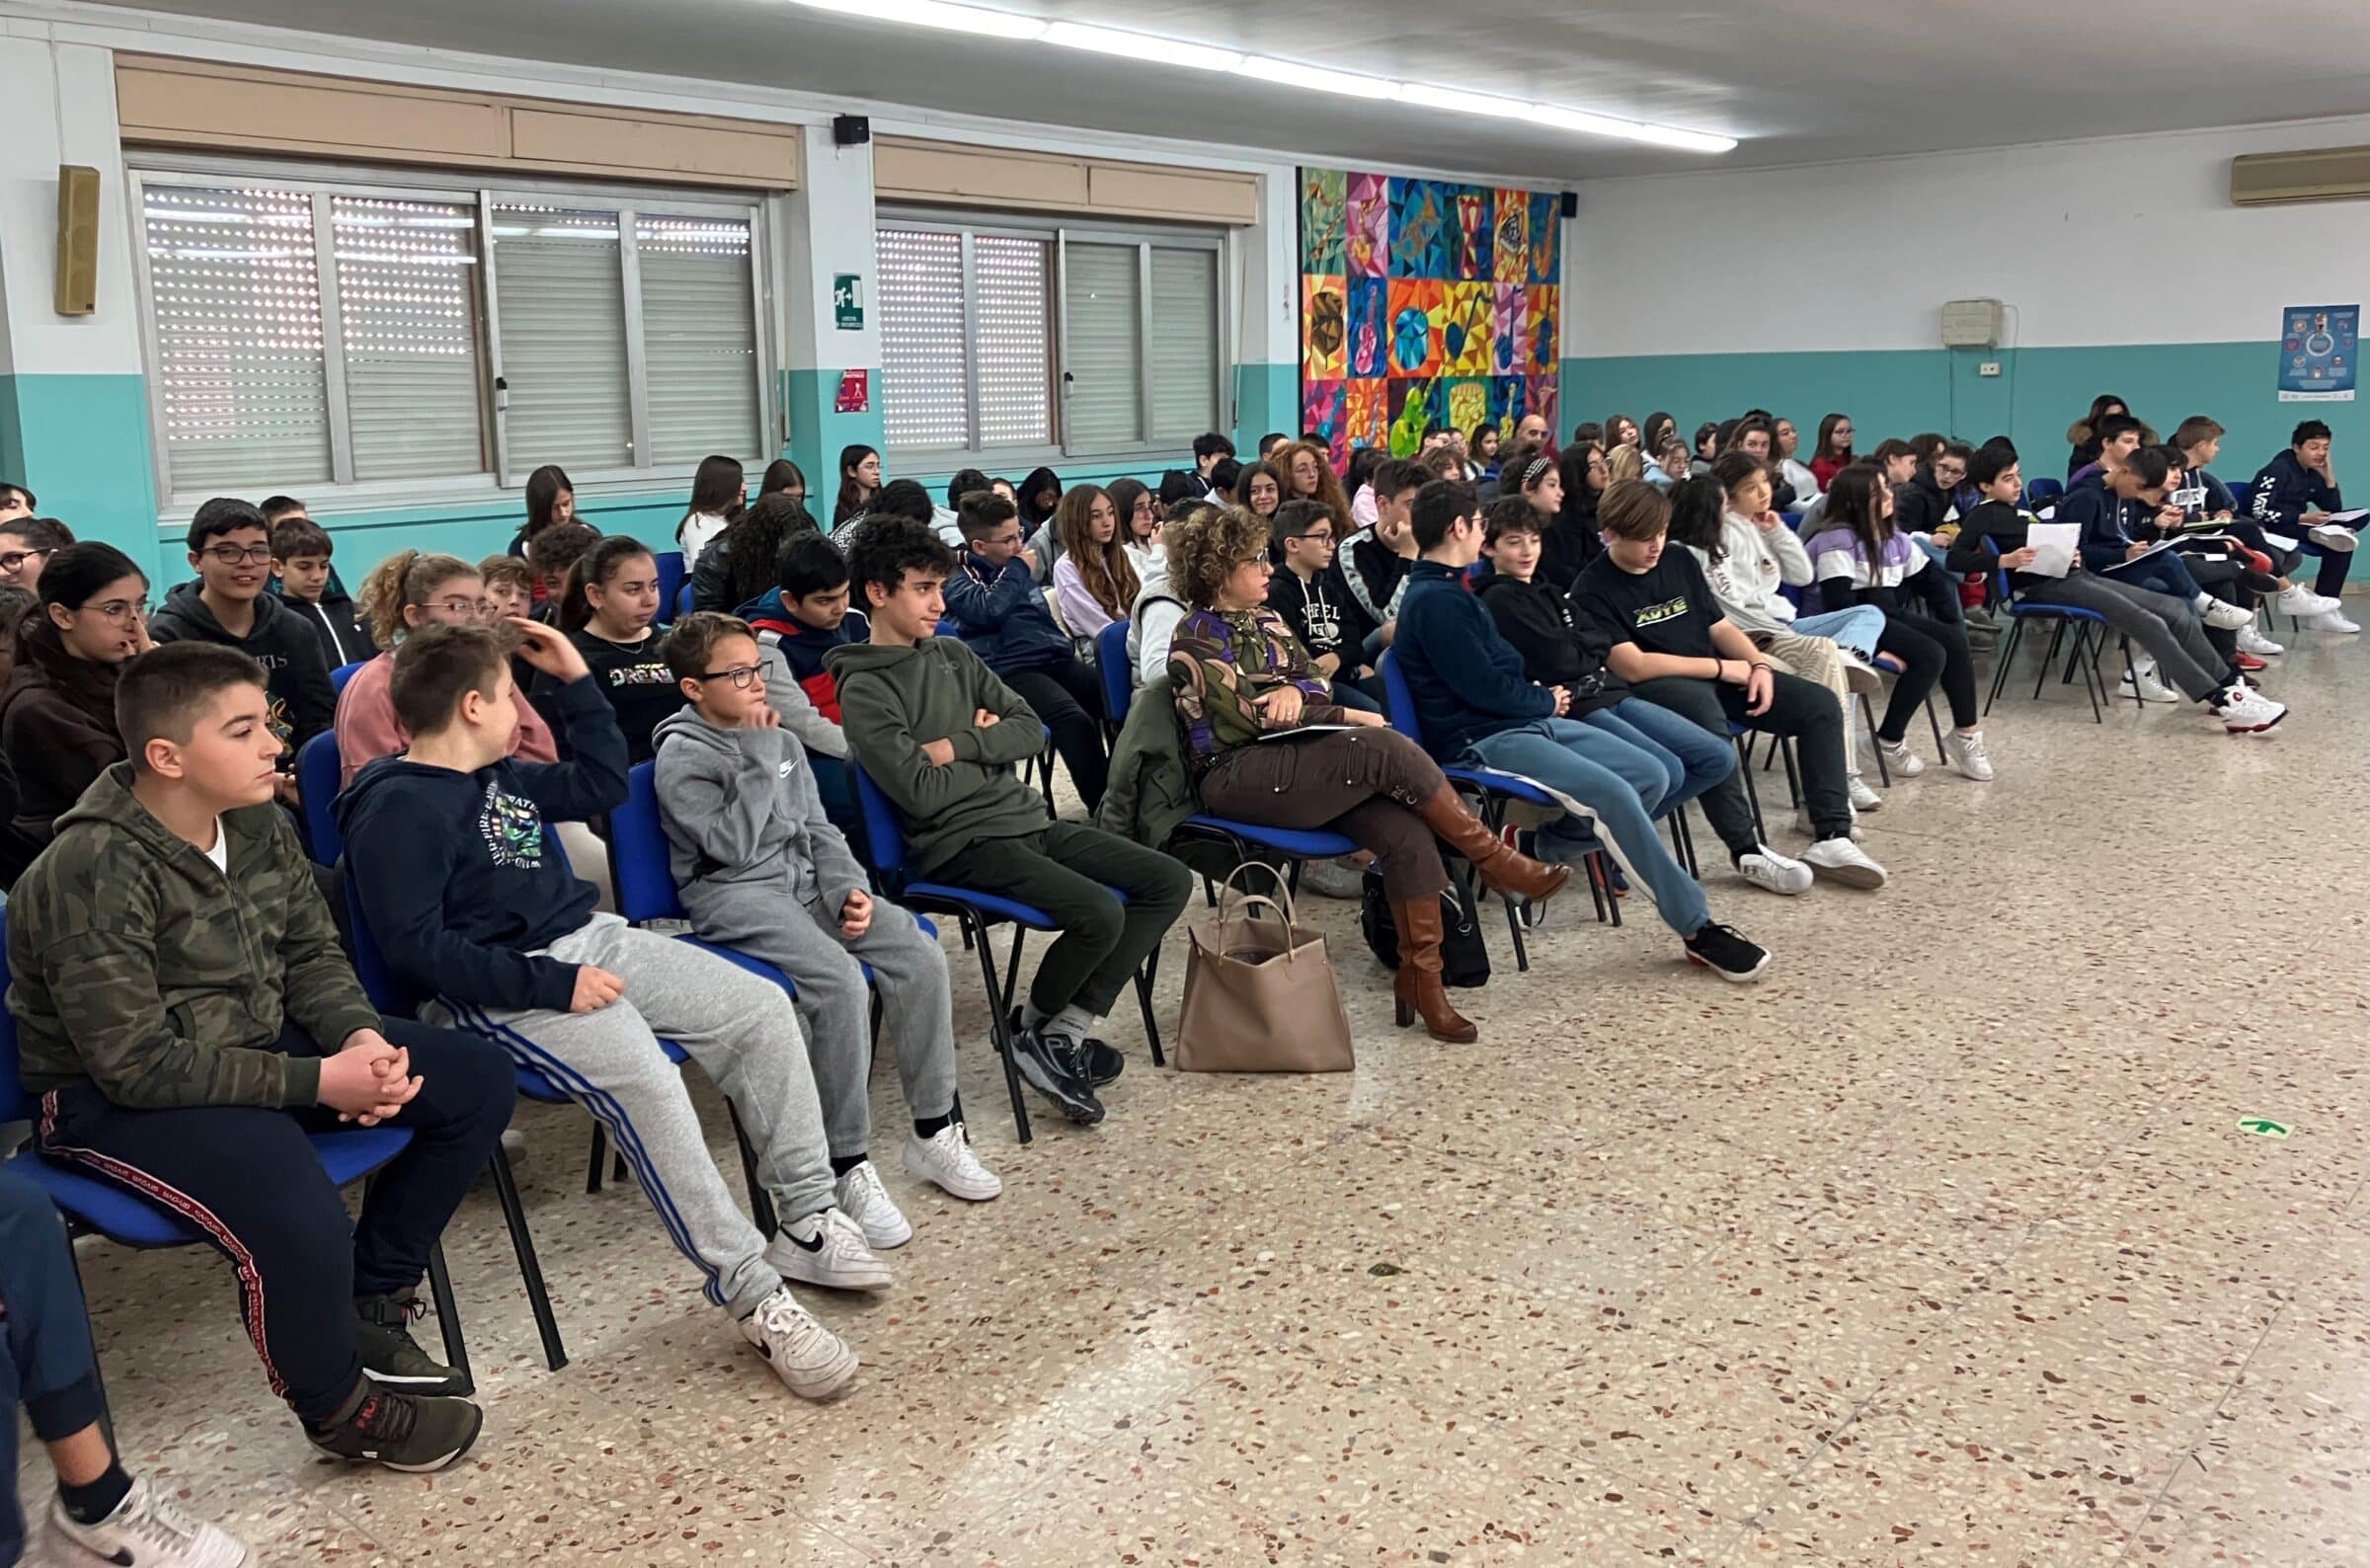 La Scuola media “Maiorana” di Catania incontra l’Associazione Nazionale Magistrati